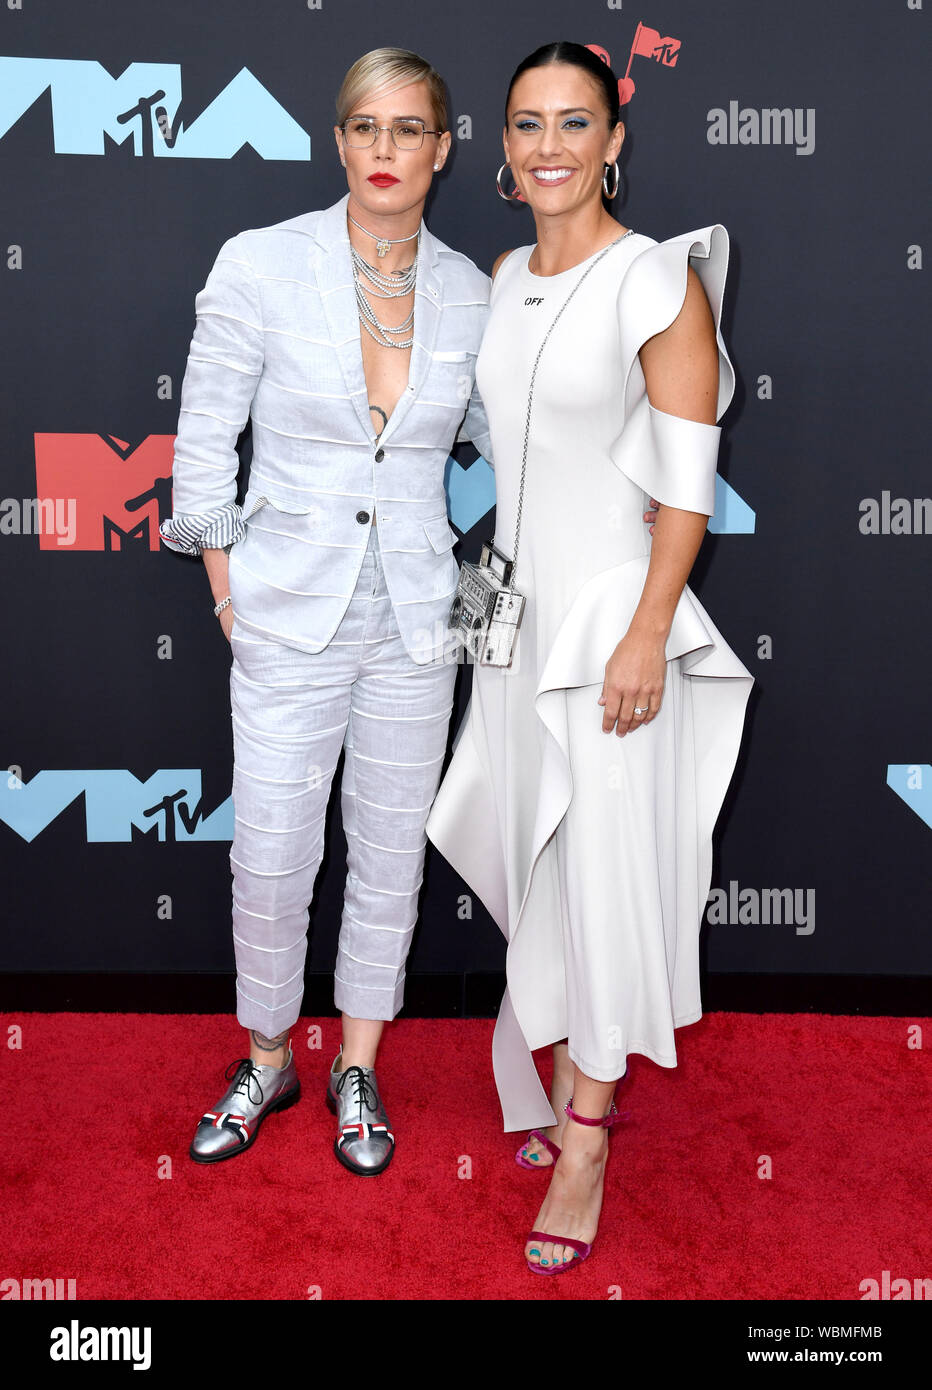 Ashlyn Harris et Ali Krieger fréquentant les MTV Video Music Awards 2019 qui a eu lieu au Prudential Center de Newark, New Jersey. Banque D'Images